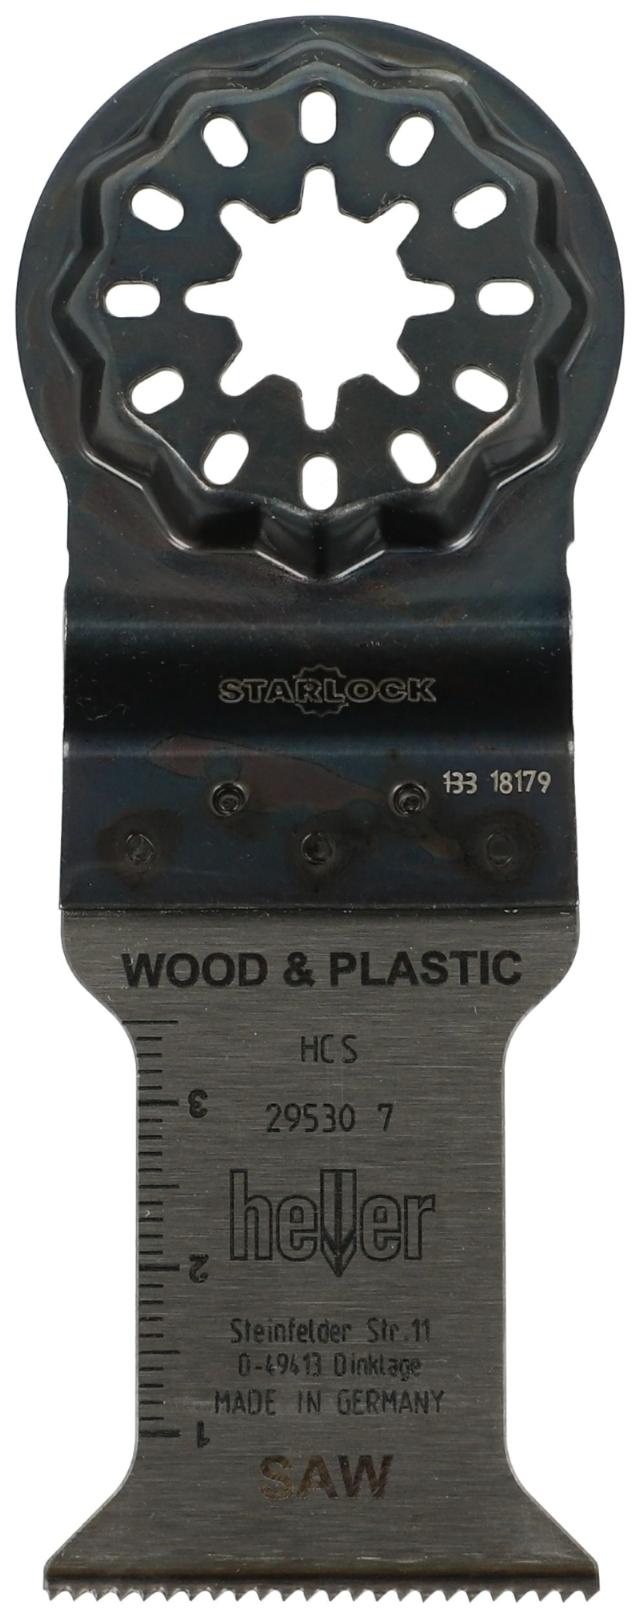 Heller starlock 35x50 mm t/ wood & plastic, 3 pcs.